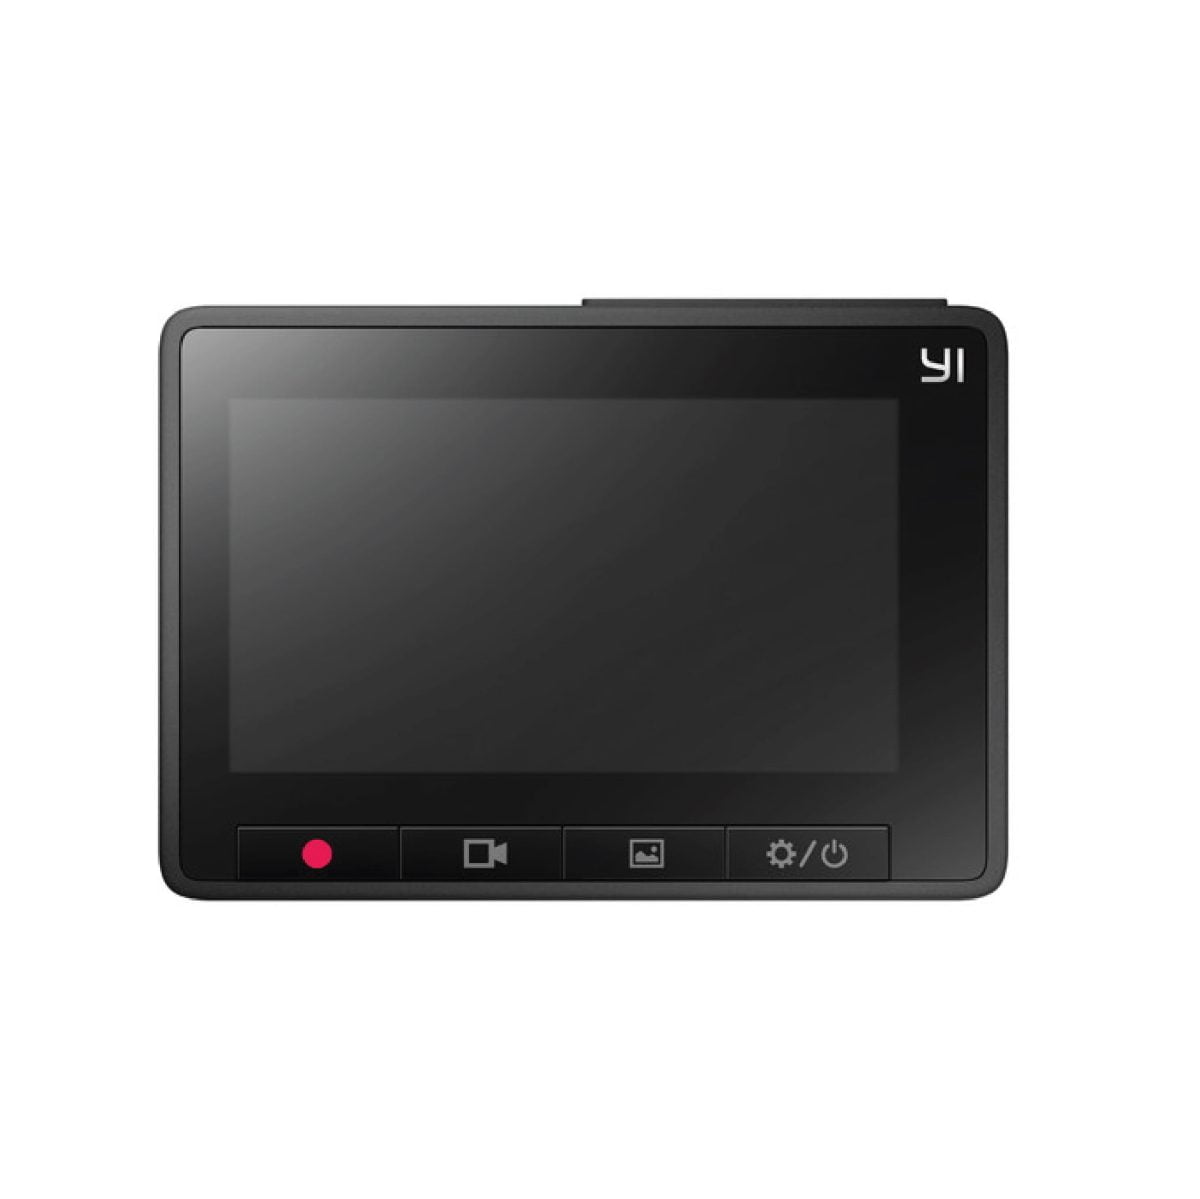 Yi Camera 04 Xiaomi &Lt;H1&Gt;Yi - Compact Dash Cam Car Dashboard Camera With 2.7” Screen, 130° Wdr Lens, G-Sensor, Loop Recording&Lt;/H1&Gt; 1080P60 Full Hd 165 Wide Angle Front Dashboard Camera Car Dvr Vehicle Recorder With Adas, G-Sensor, Phone App, Wdr, Loop Recording - Grey Https://Youtu.be/Tsowlpdc0U4 Yi - Compact Dash Cam Car Yi - Compact Dash Cam Car Dashboard Camera With 2.7” Screen, 130° Wdr Lens, G-Sensor, Loop Recording